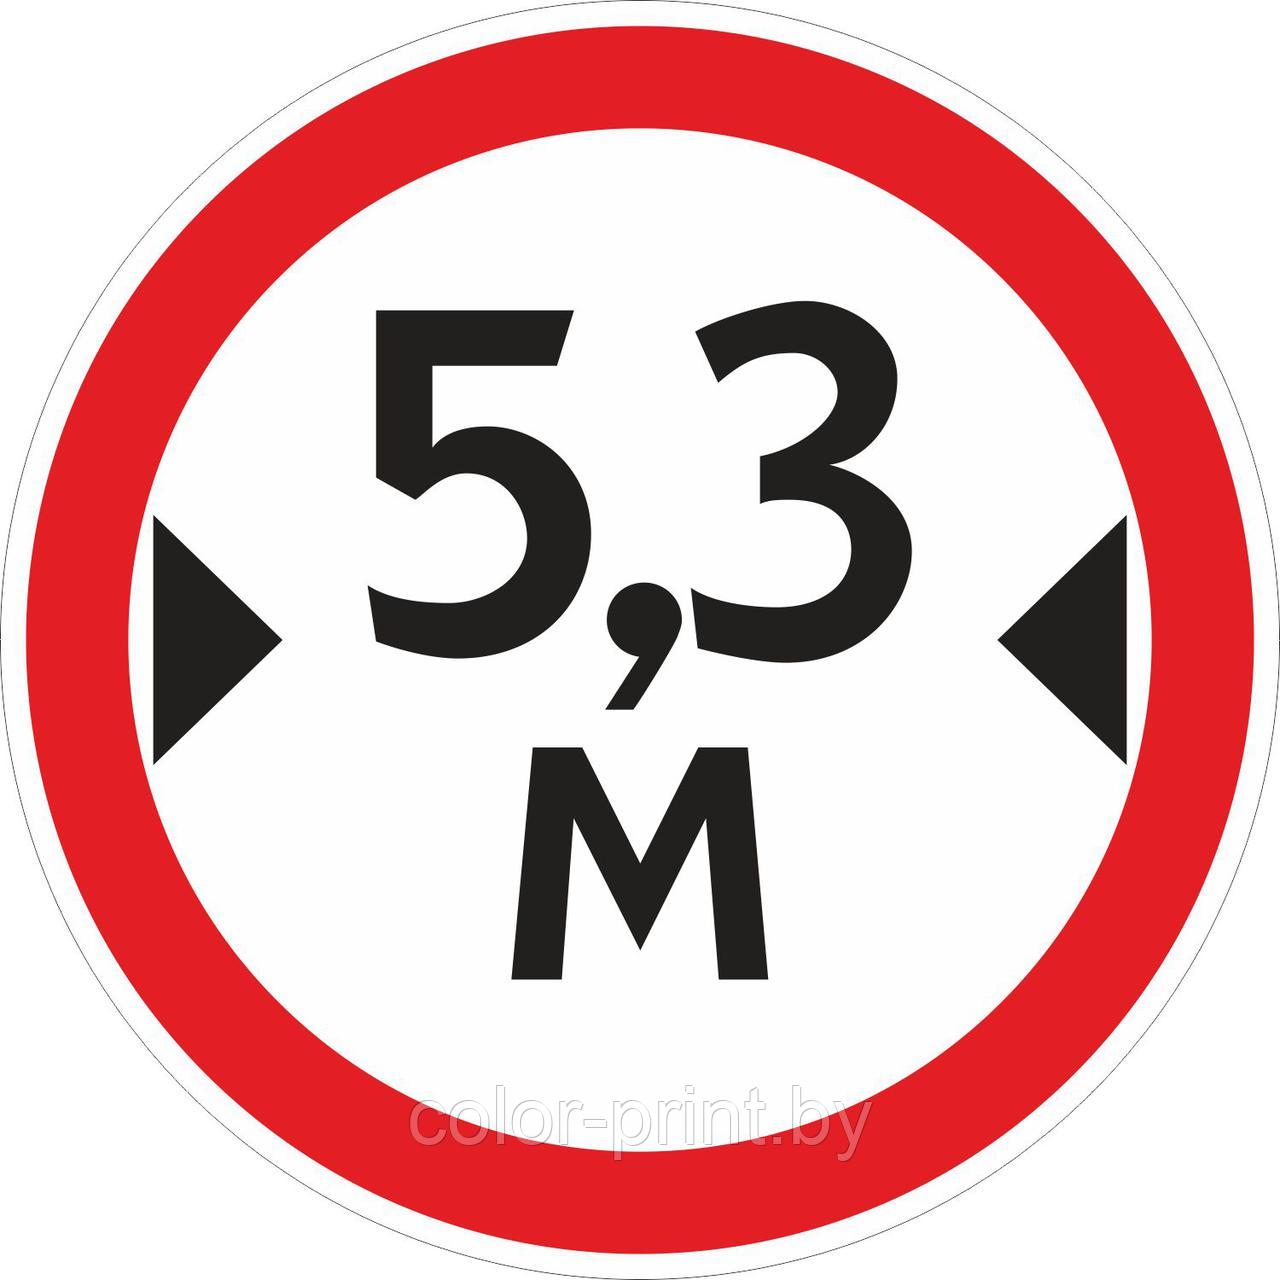 Наклейка ПВХ "Ограничение ширины проезда 5.3м"